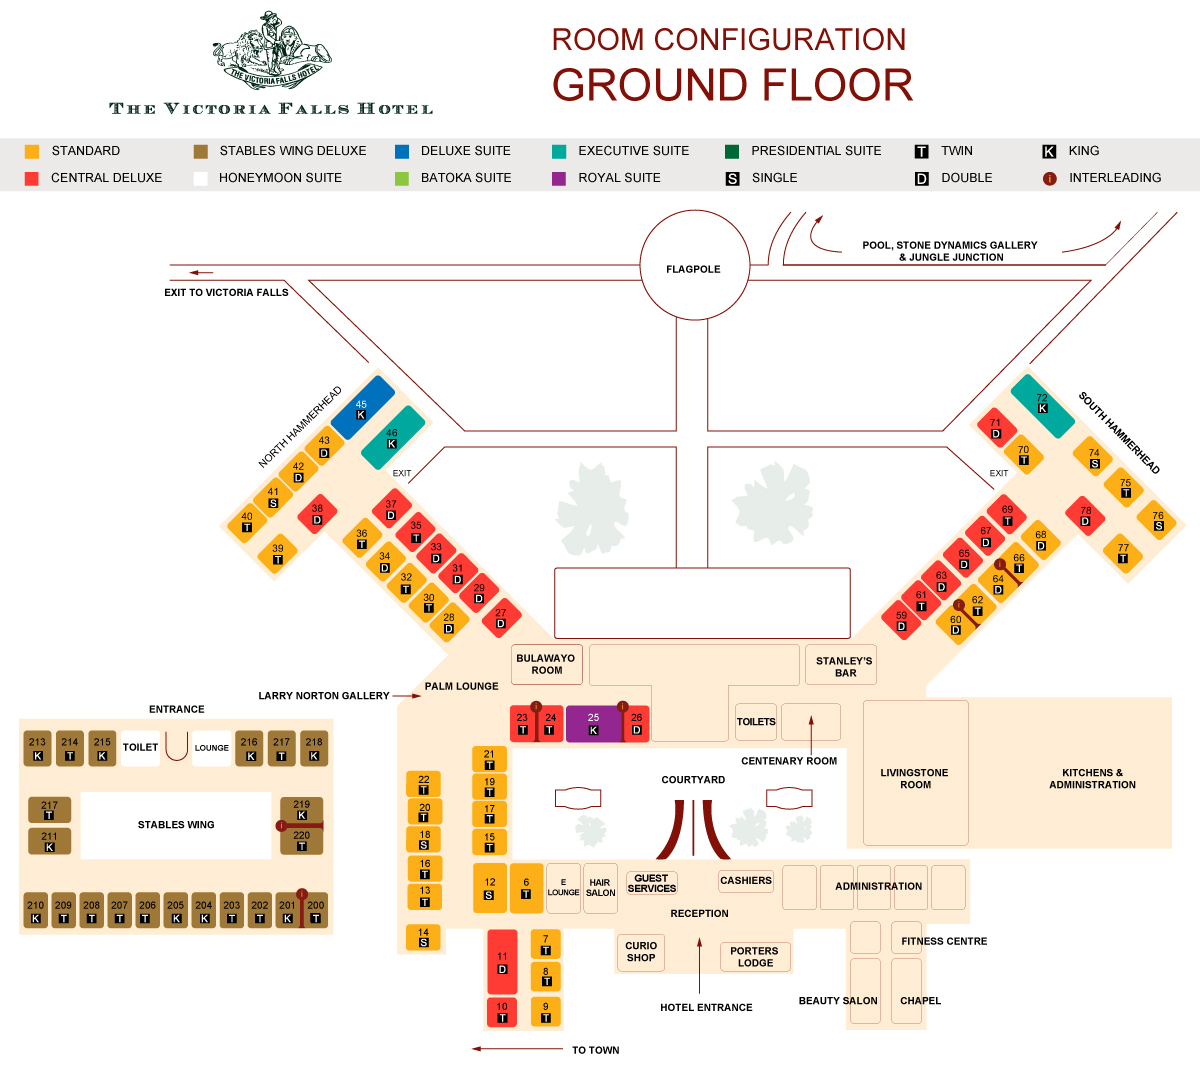 Victoria Falls Hotel ground floor layout